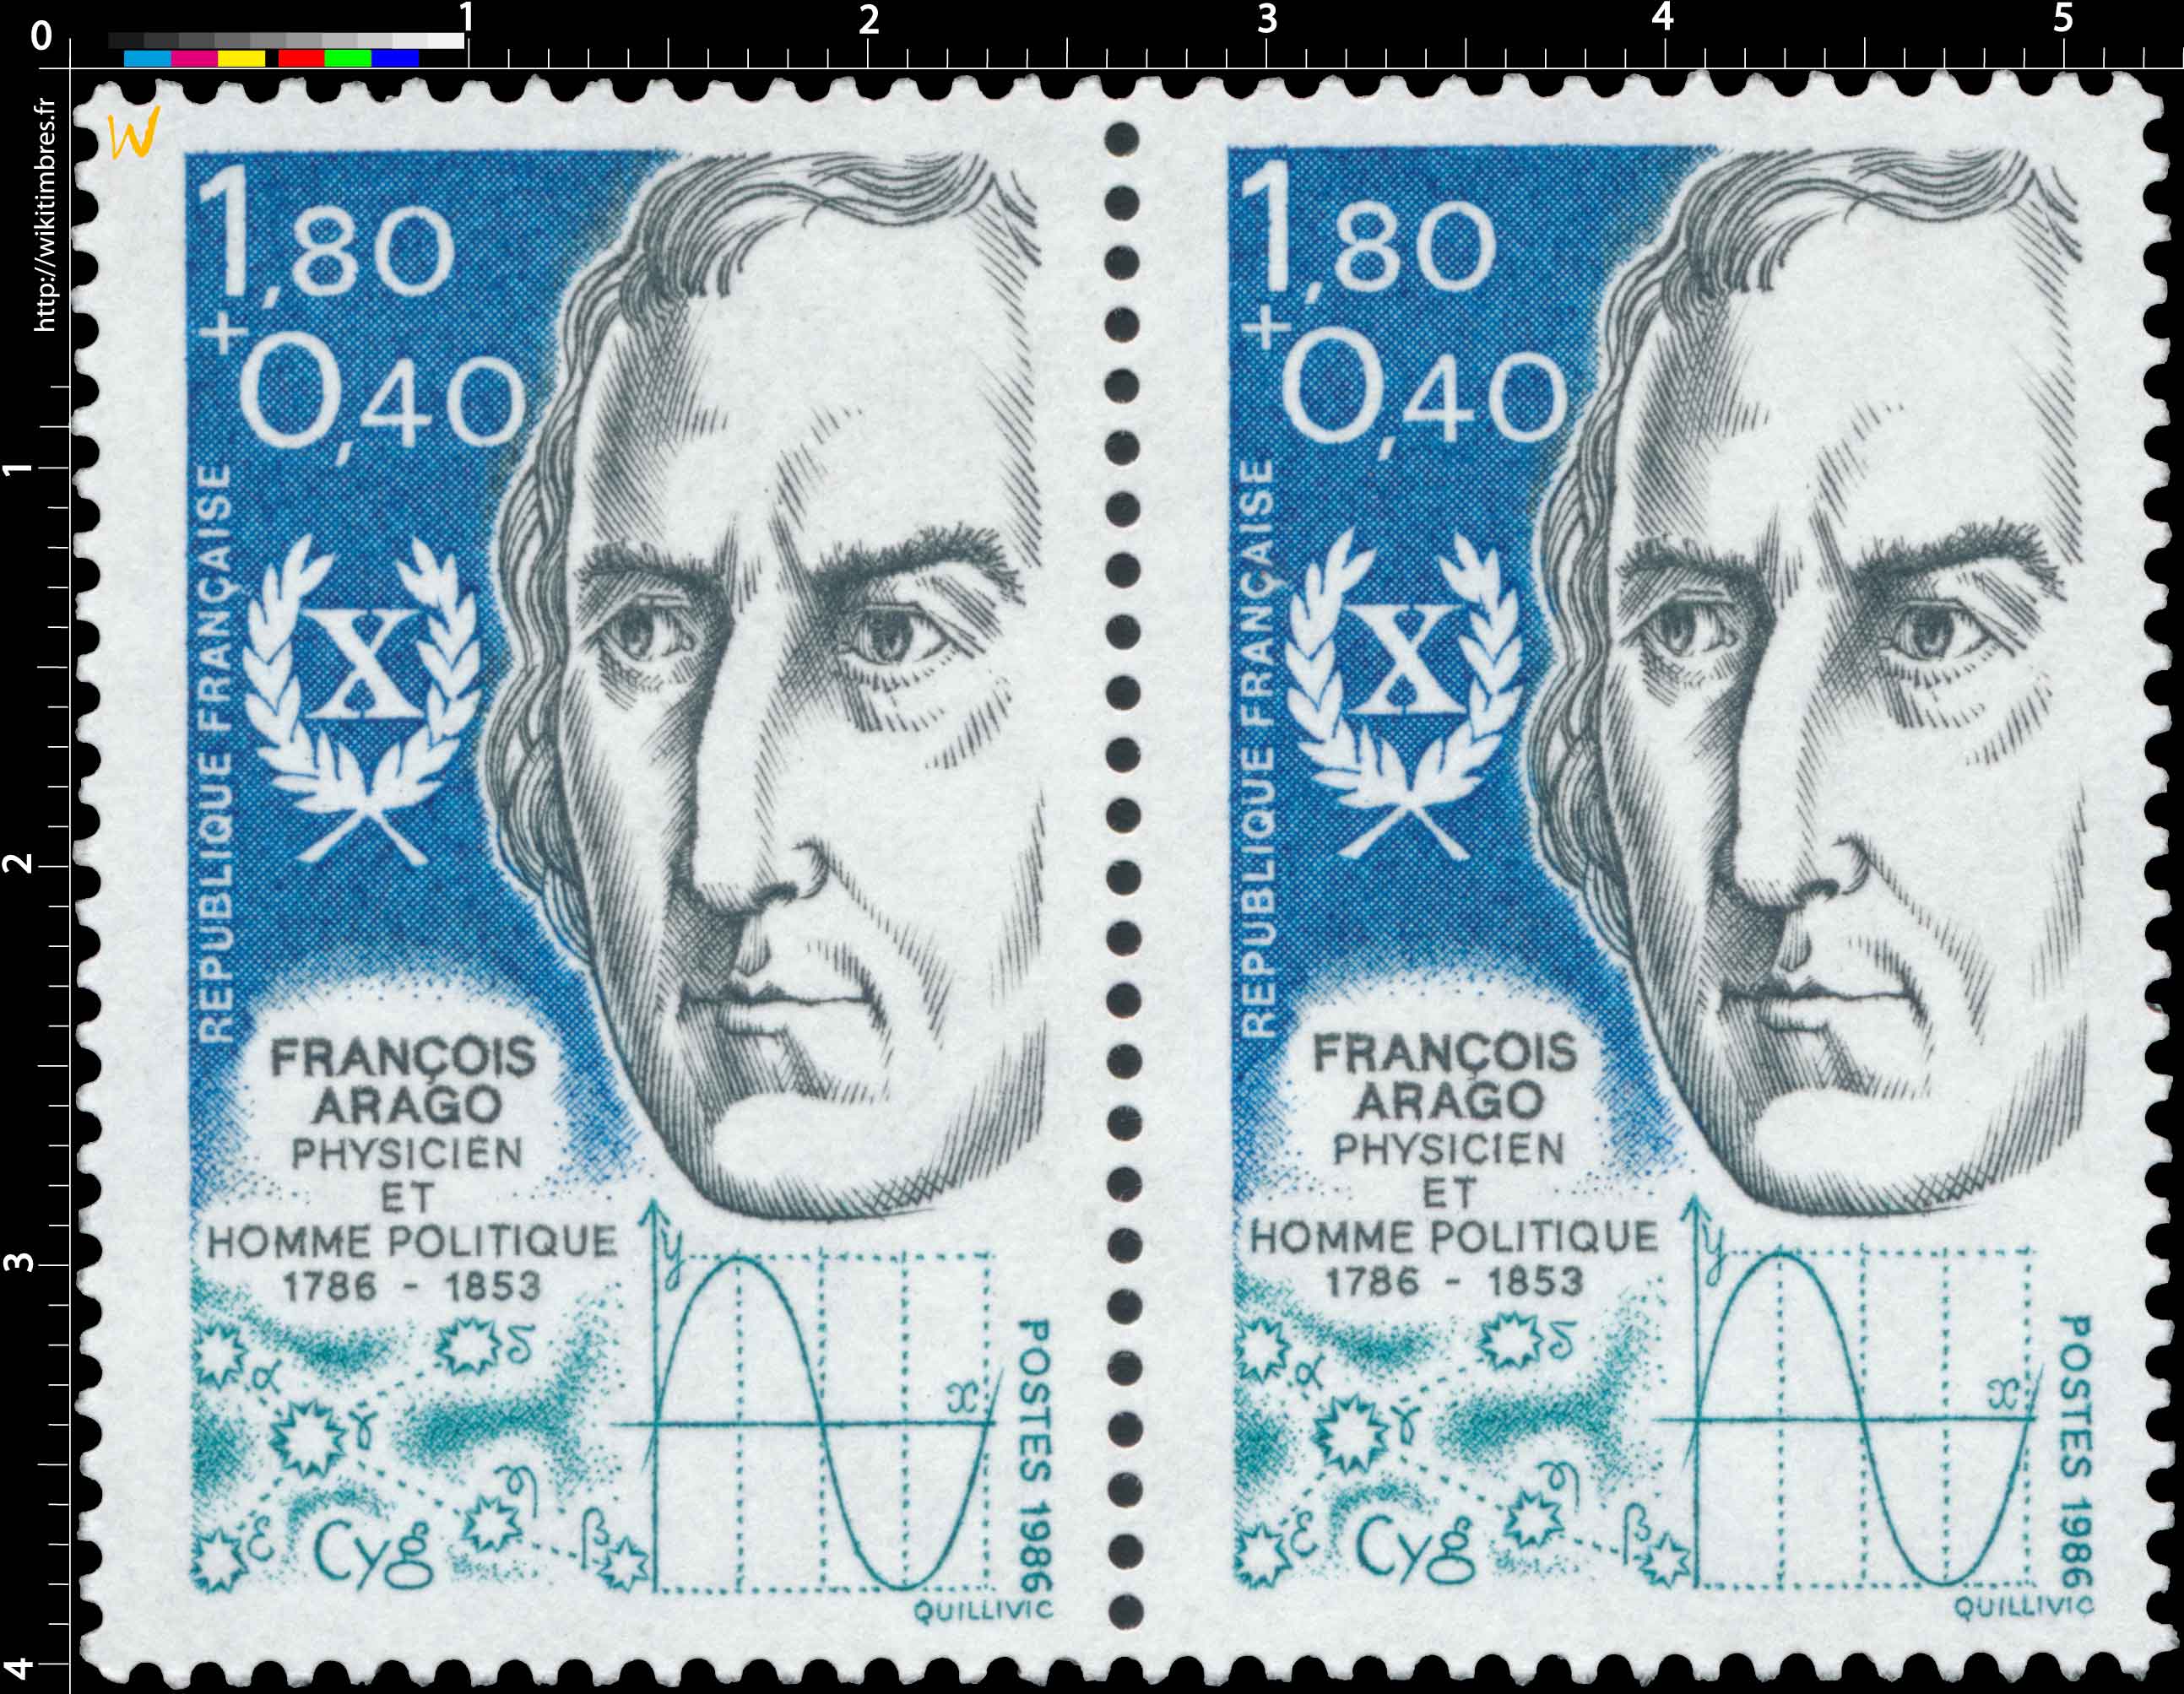 1986 FRANÇOIS ARAGO PHYSICIEN ET HOMME POLITIQUE 1786-1853